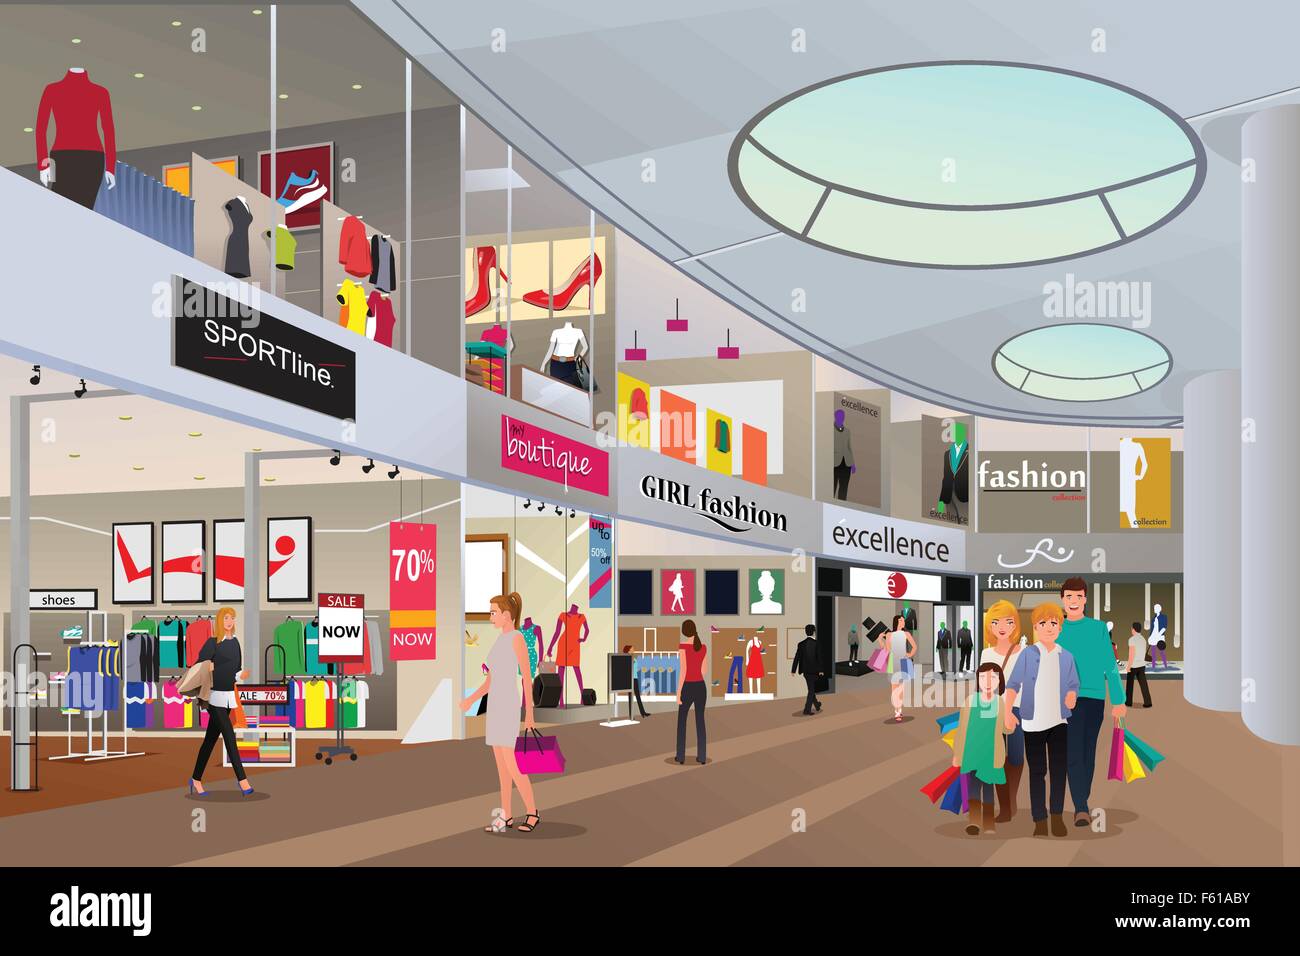 Un vecteur illustration de personnes shopping dans un centre commercial Illustration de Vecteur